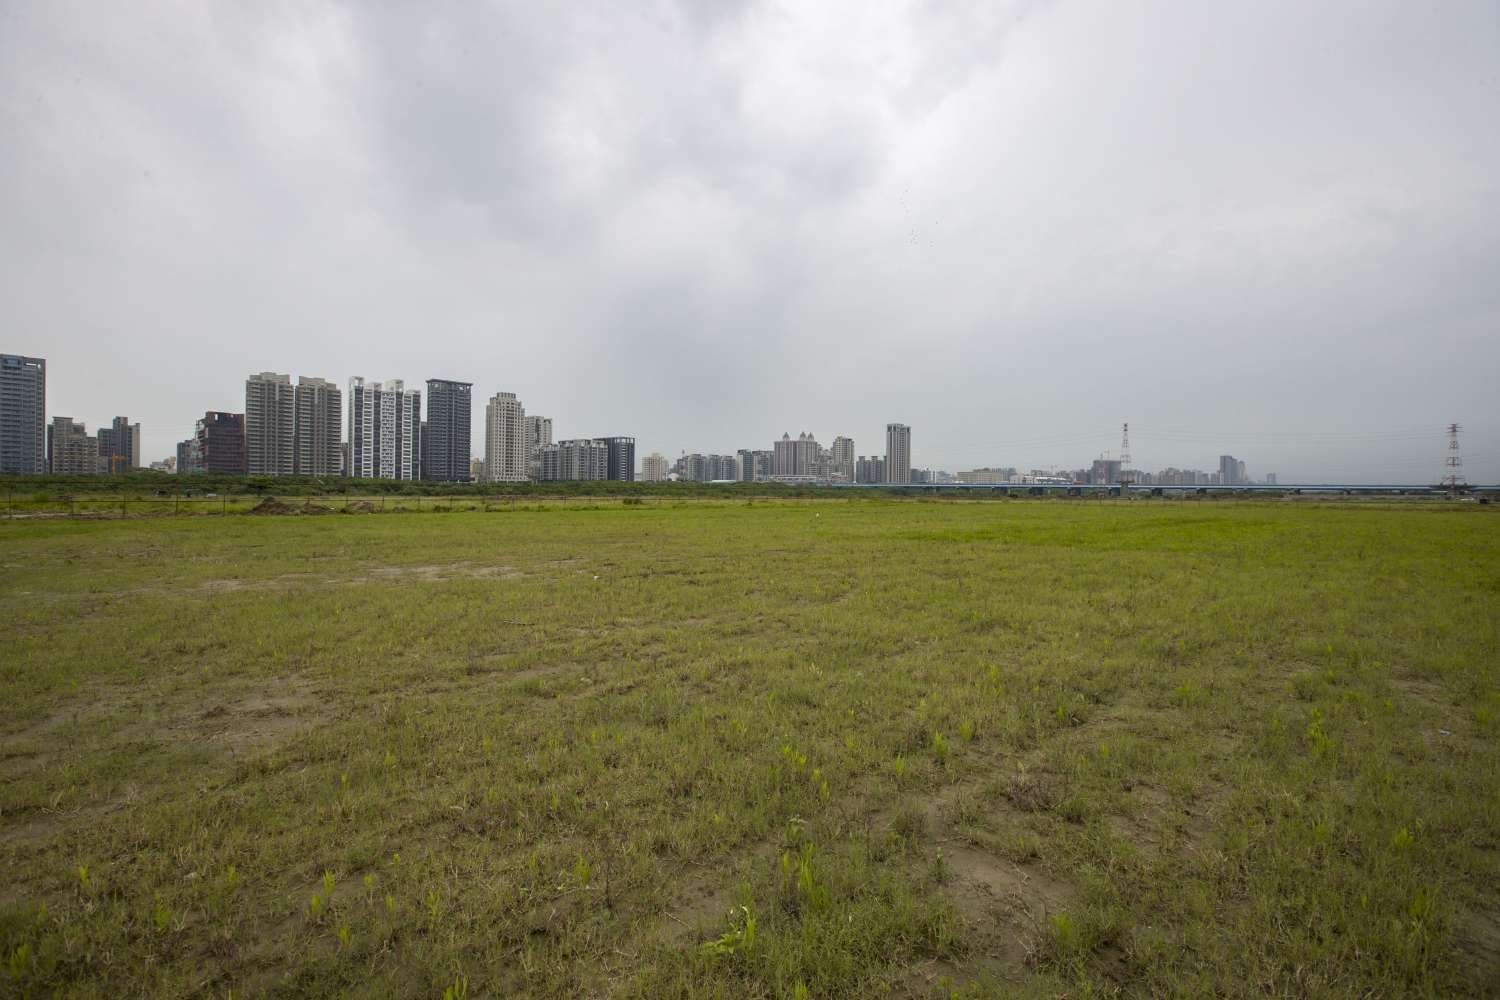 面積428個籃球場大的草原來了 新竹市打造新水岸秘境「水源草原」小圖共6張，pic6